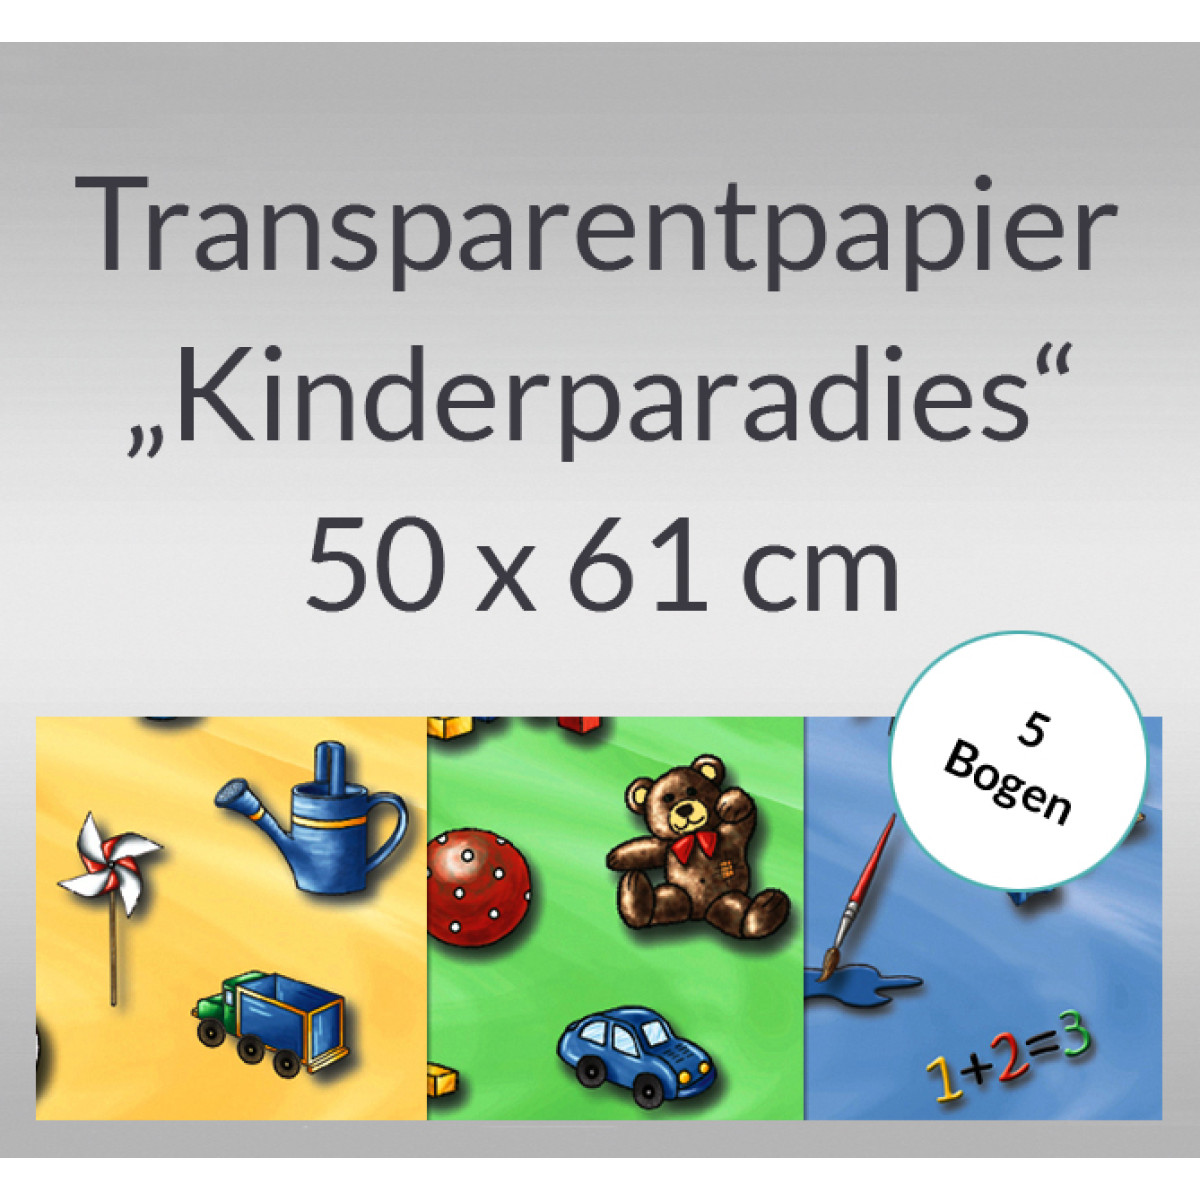 Transparentpapier "Kinderparadies" 50 x 61 cm - 5 Rollen